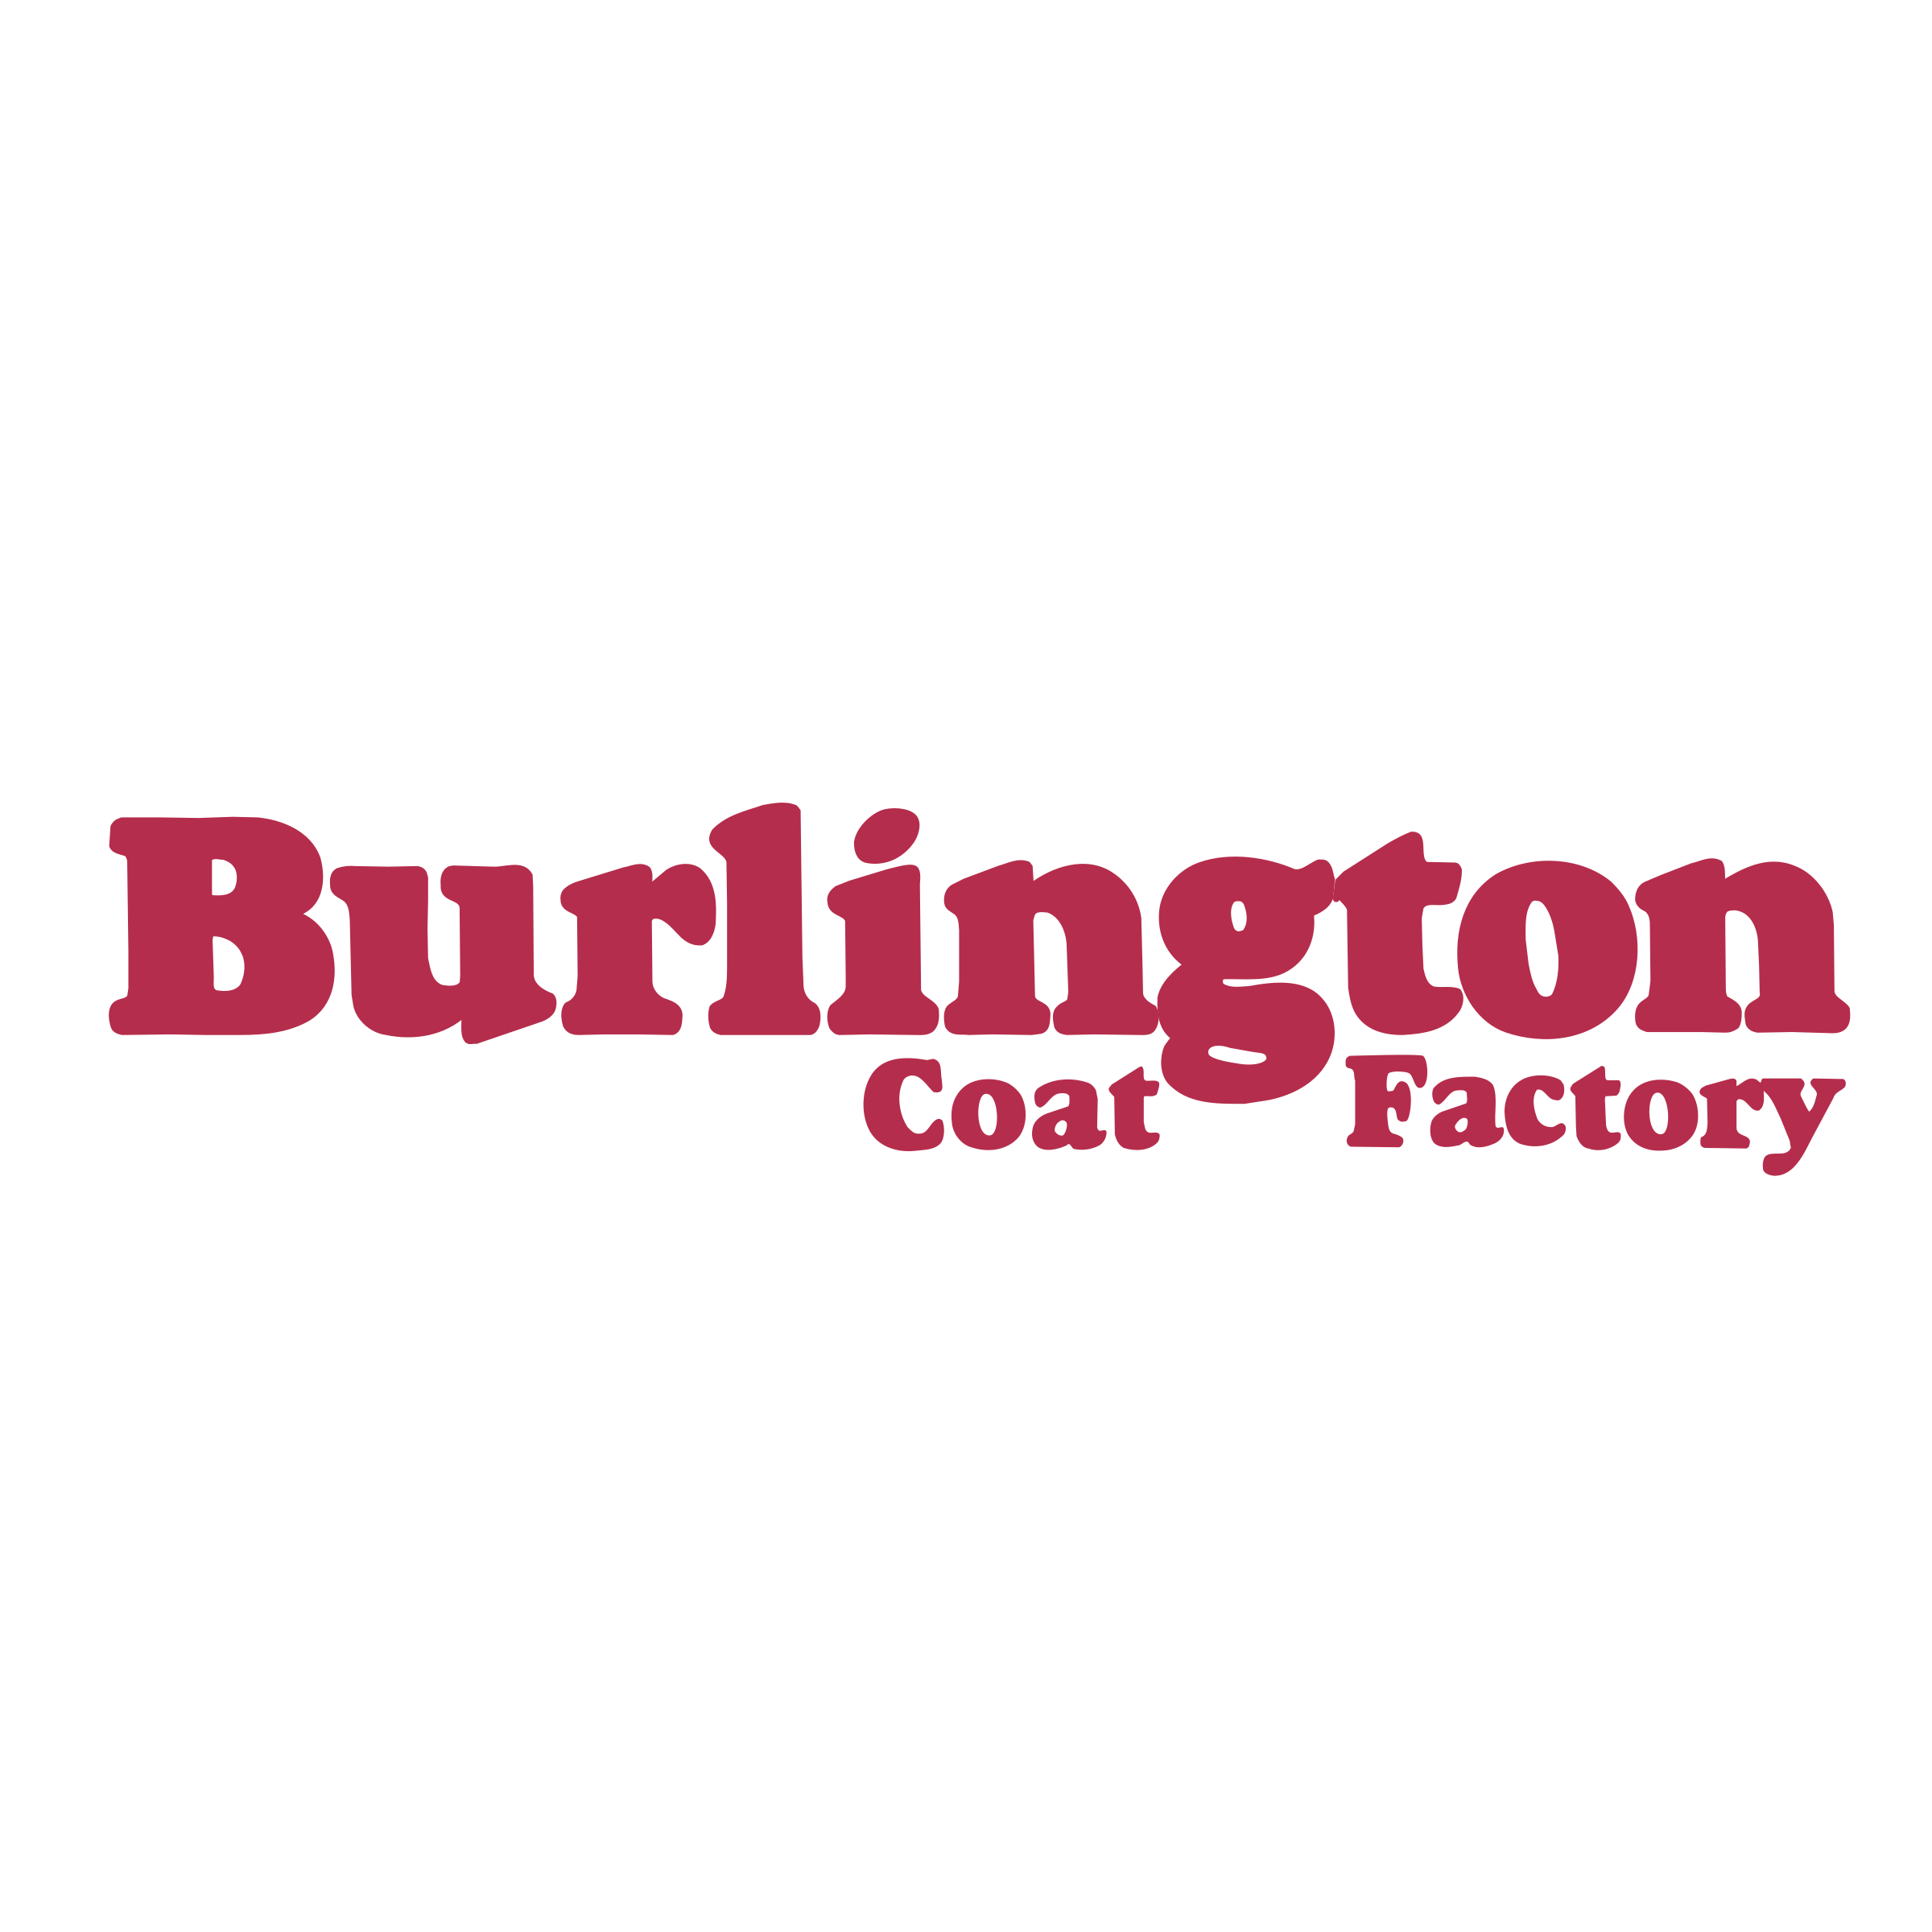 Burlington Coat Factory Logo - Burlington Coat Factory Logo PNG Transparent & SVG Vector - Freebie ...